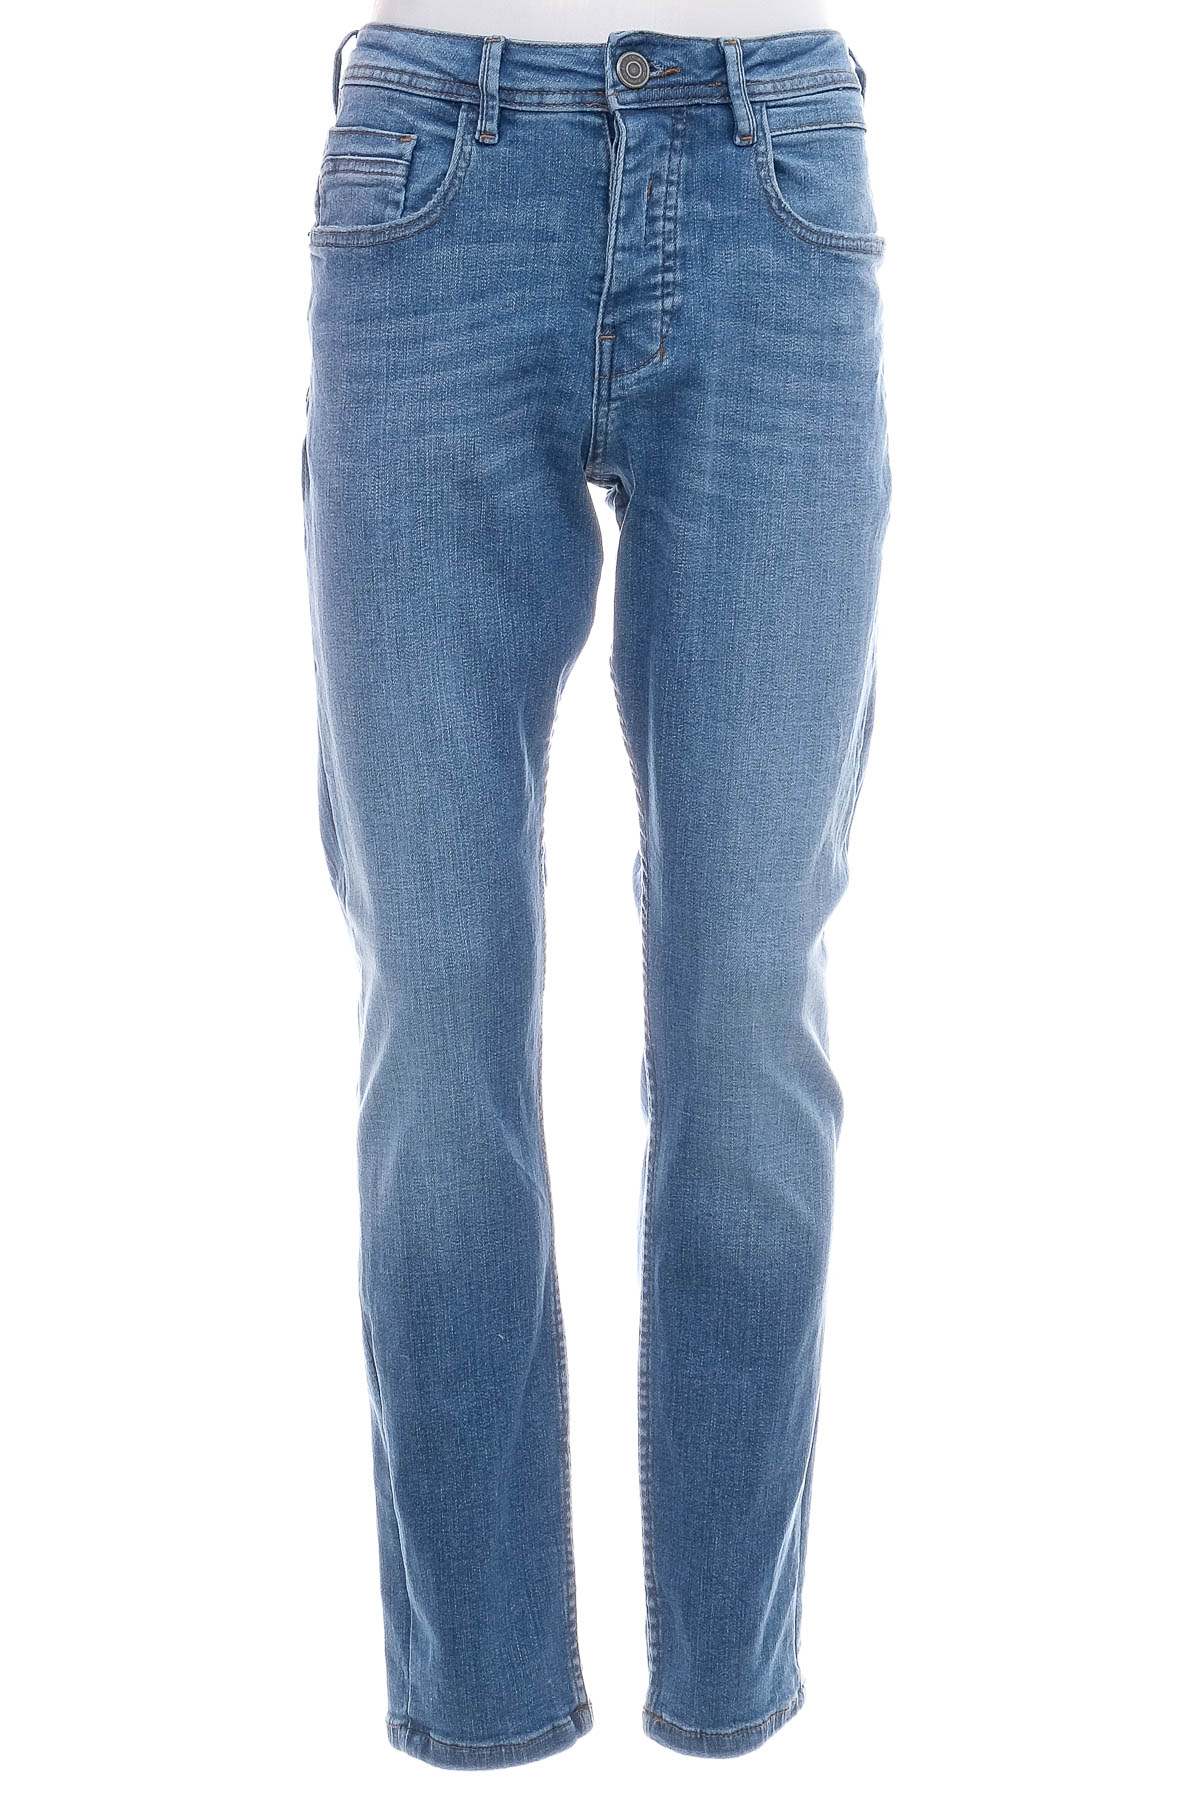 Jeans pentru bărbăți - Denim & Co - 0